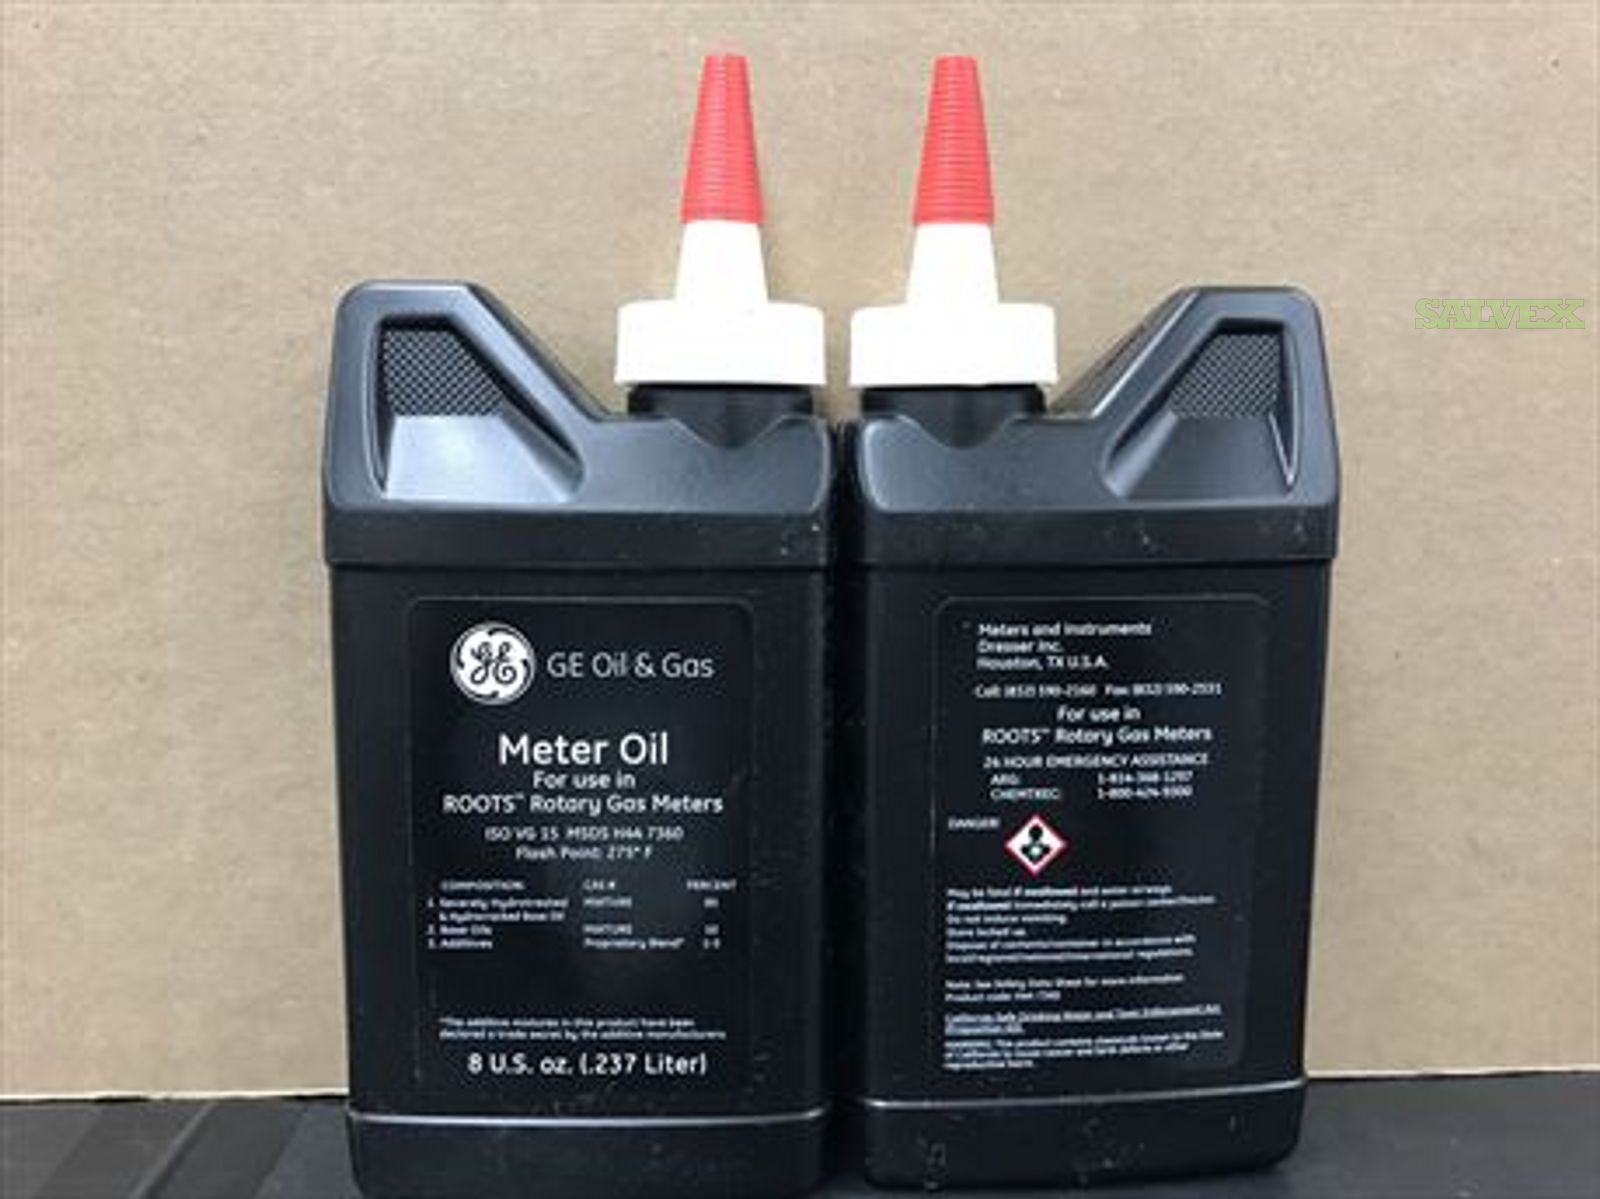 *METER OIL* - GE Oil & Gas - (8oz) (280 Units)